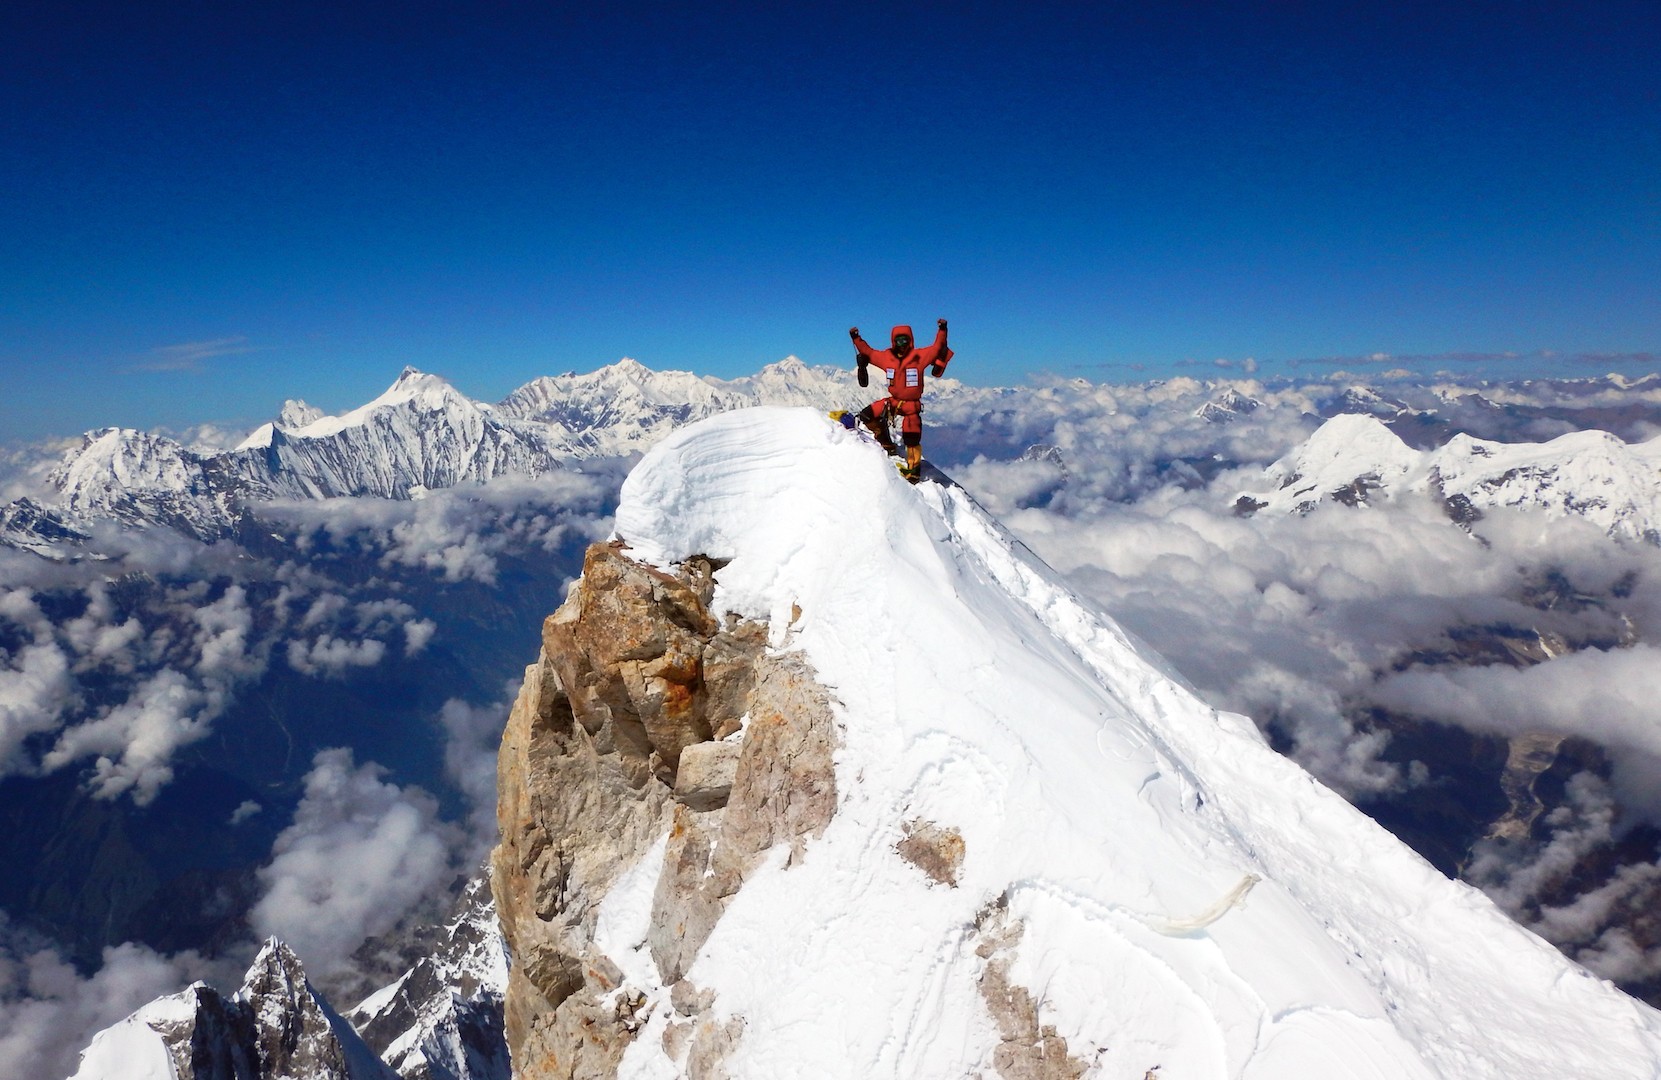 Данило Каллеражи (Danilo Callegari) - один из немногих альпинистов, который достиг истинной вершины Манаслу в 2016 году. Фото Danilo Callegari